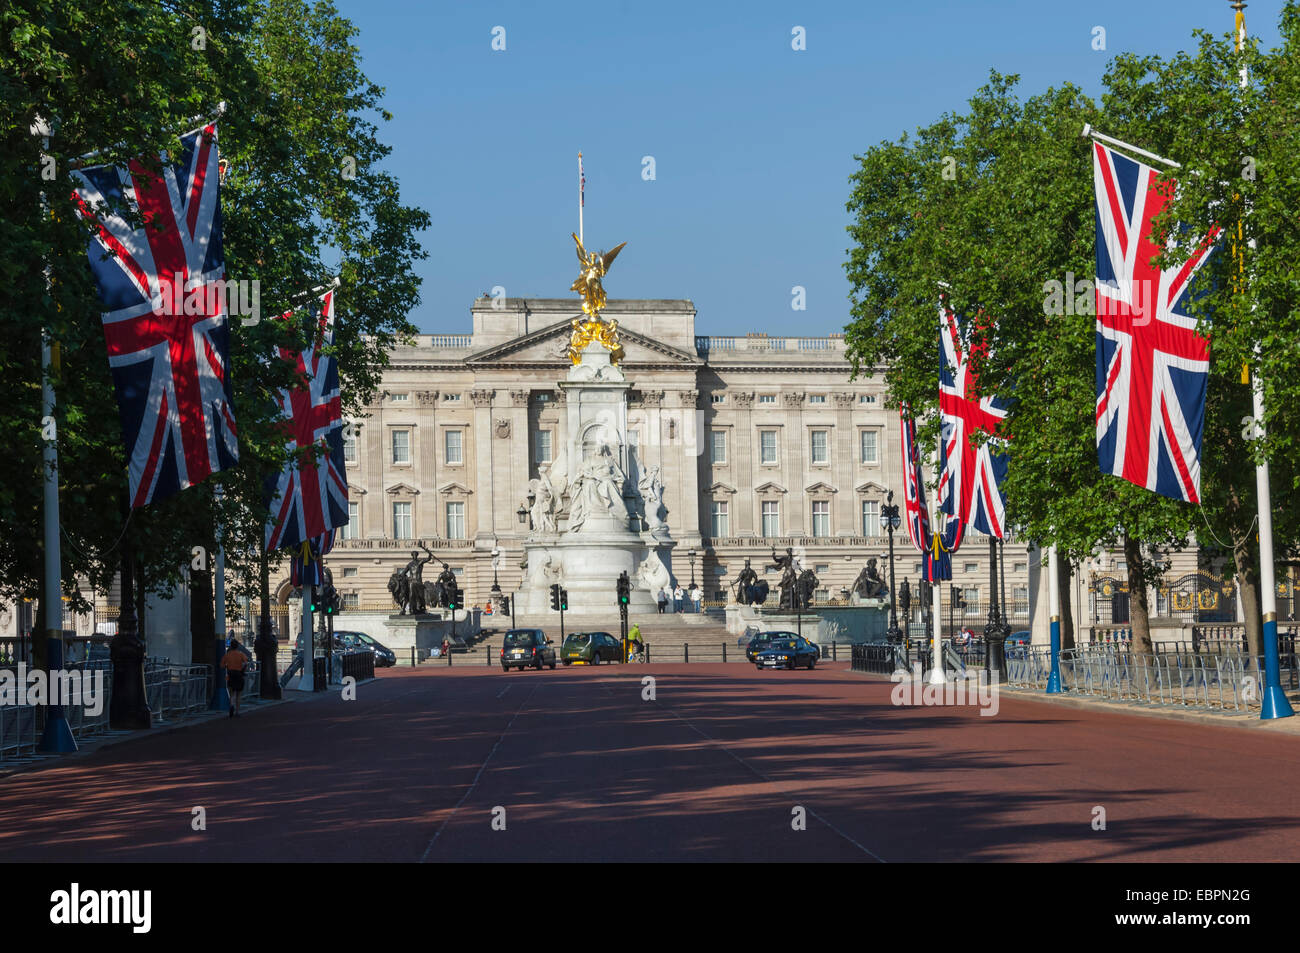 Le palais de Buckingham, le centre commercial avec l'Union Jack drapeaux, Londres, Angleterre, Royaume-Uni, Europe Banque D'Images